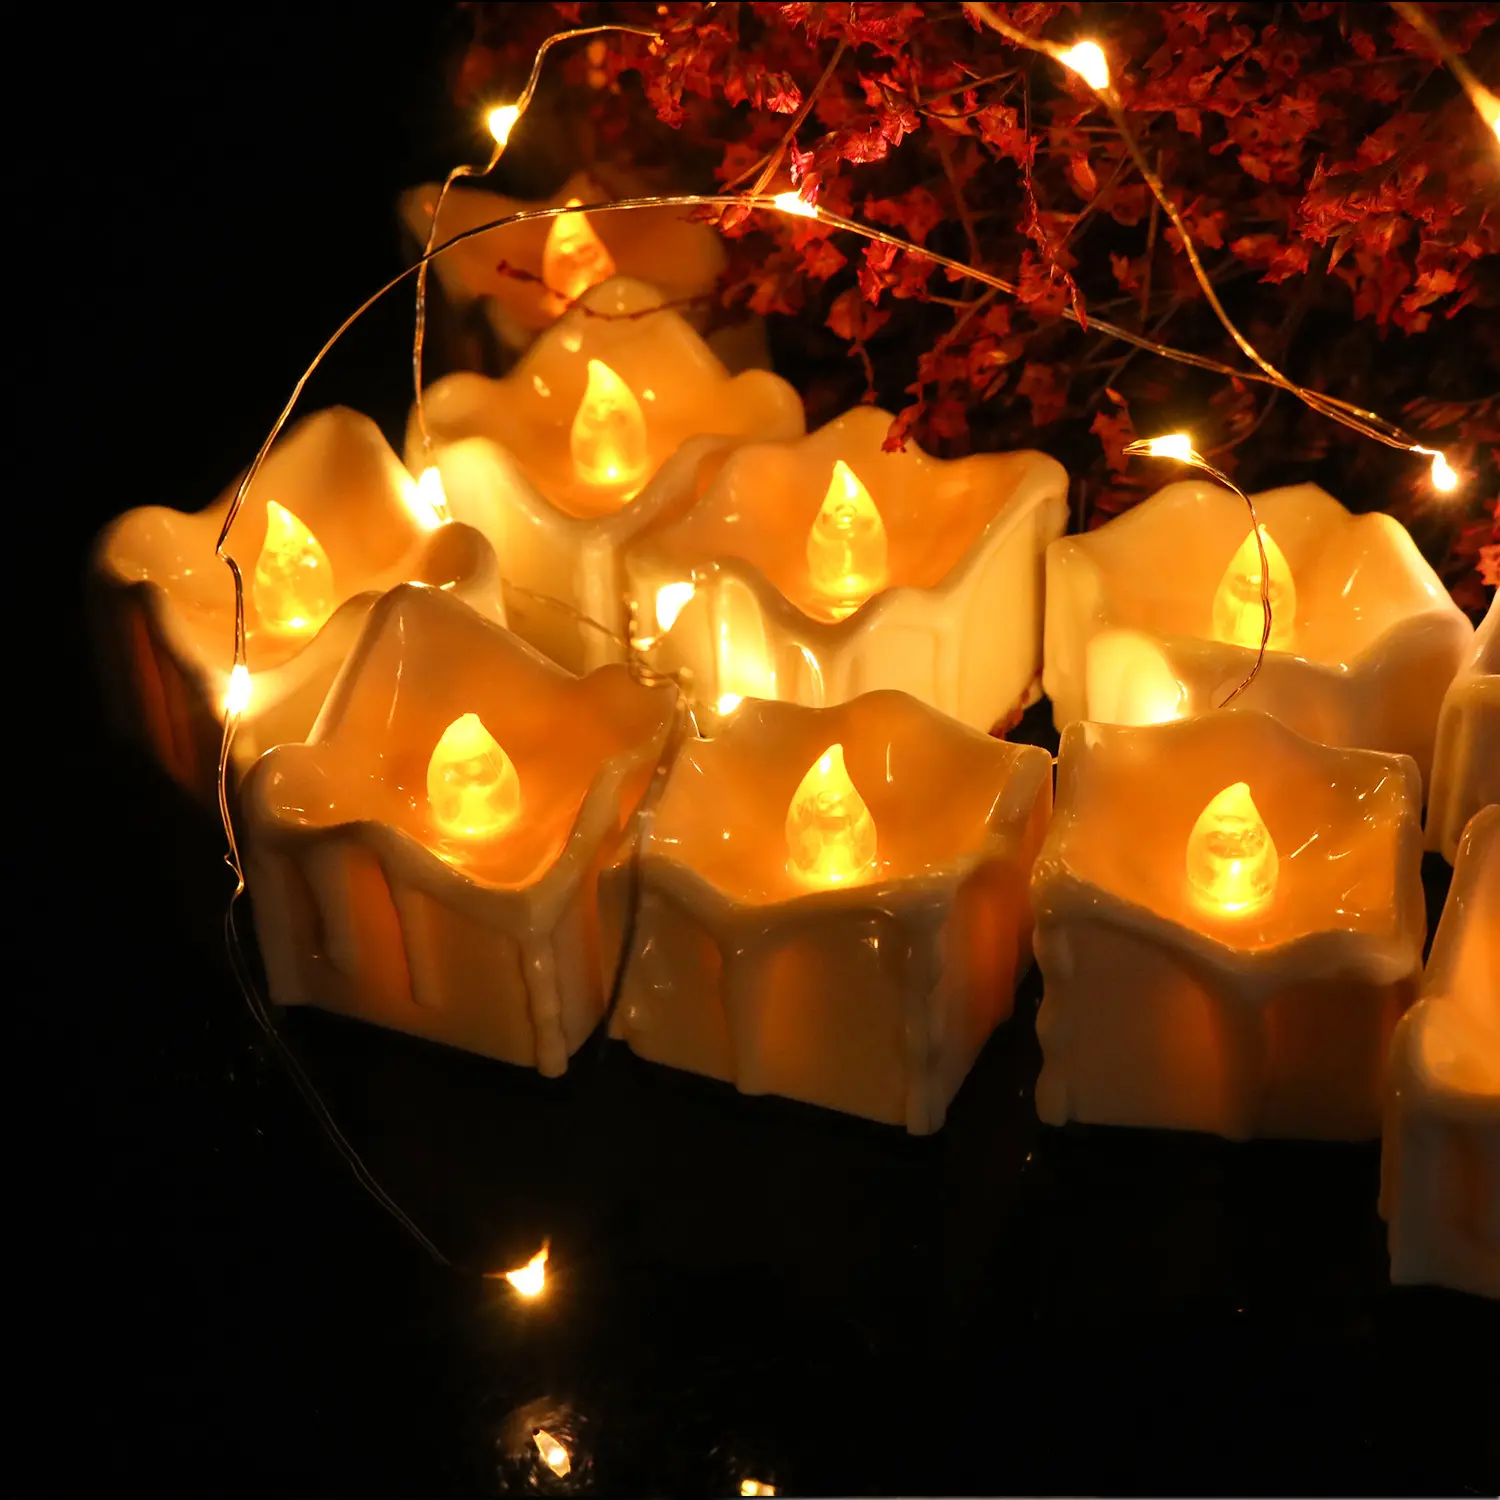 Più nuovo Batteria di Natale HA PORTATO A Distanza Piazza Candela Diwali Decorazione Diya e Giallo Senza Fiamma Flickering Tè a Lume di Candela